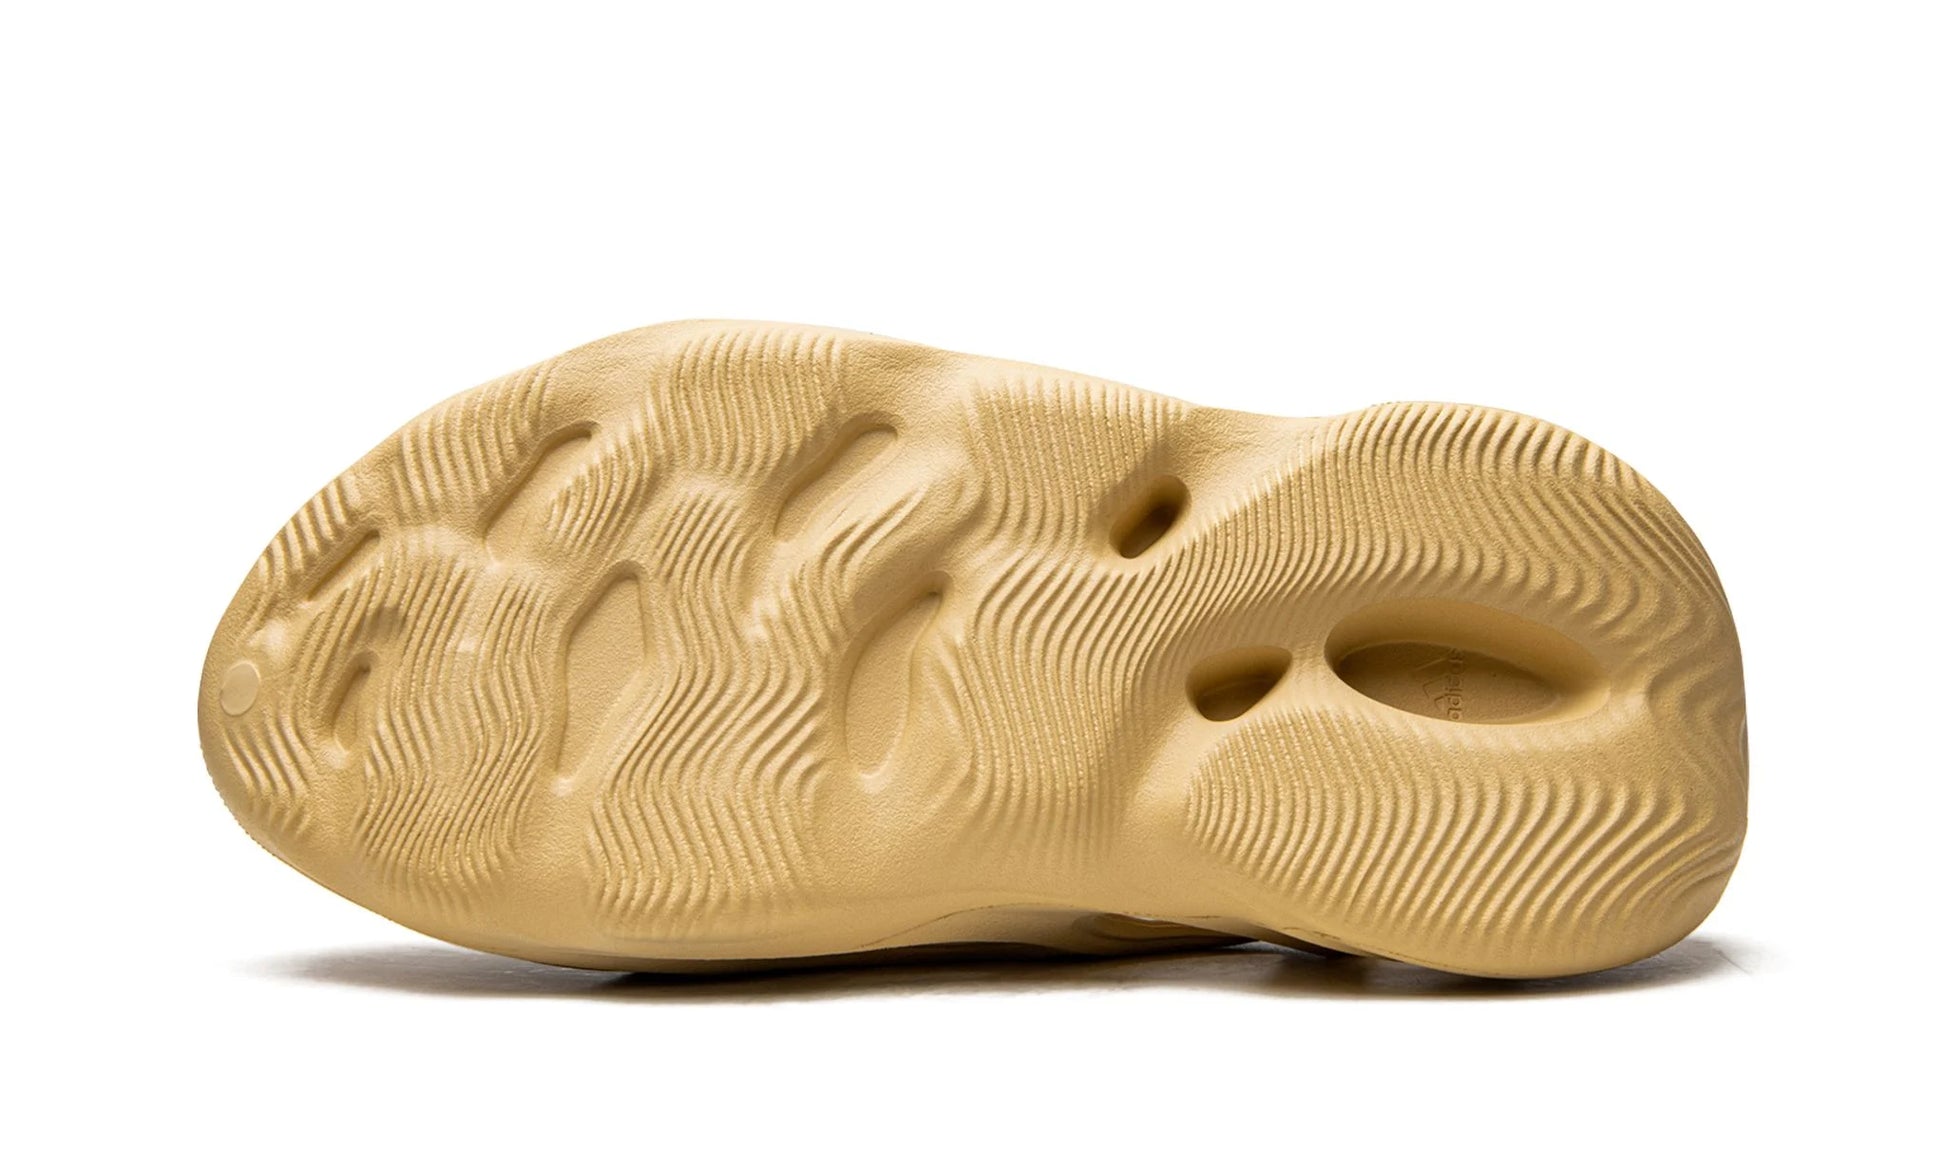 Adidas Yeezy Foam Runner Desert Sand Bottom Outsole View